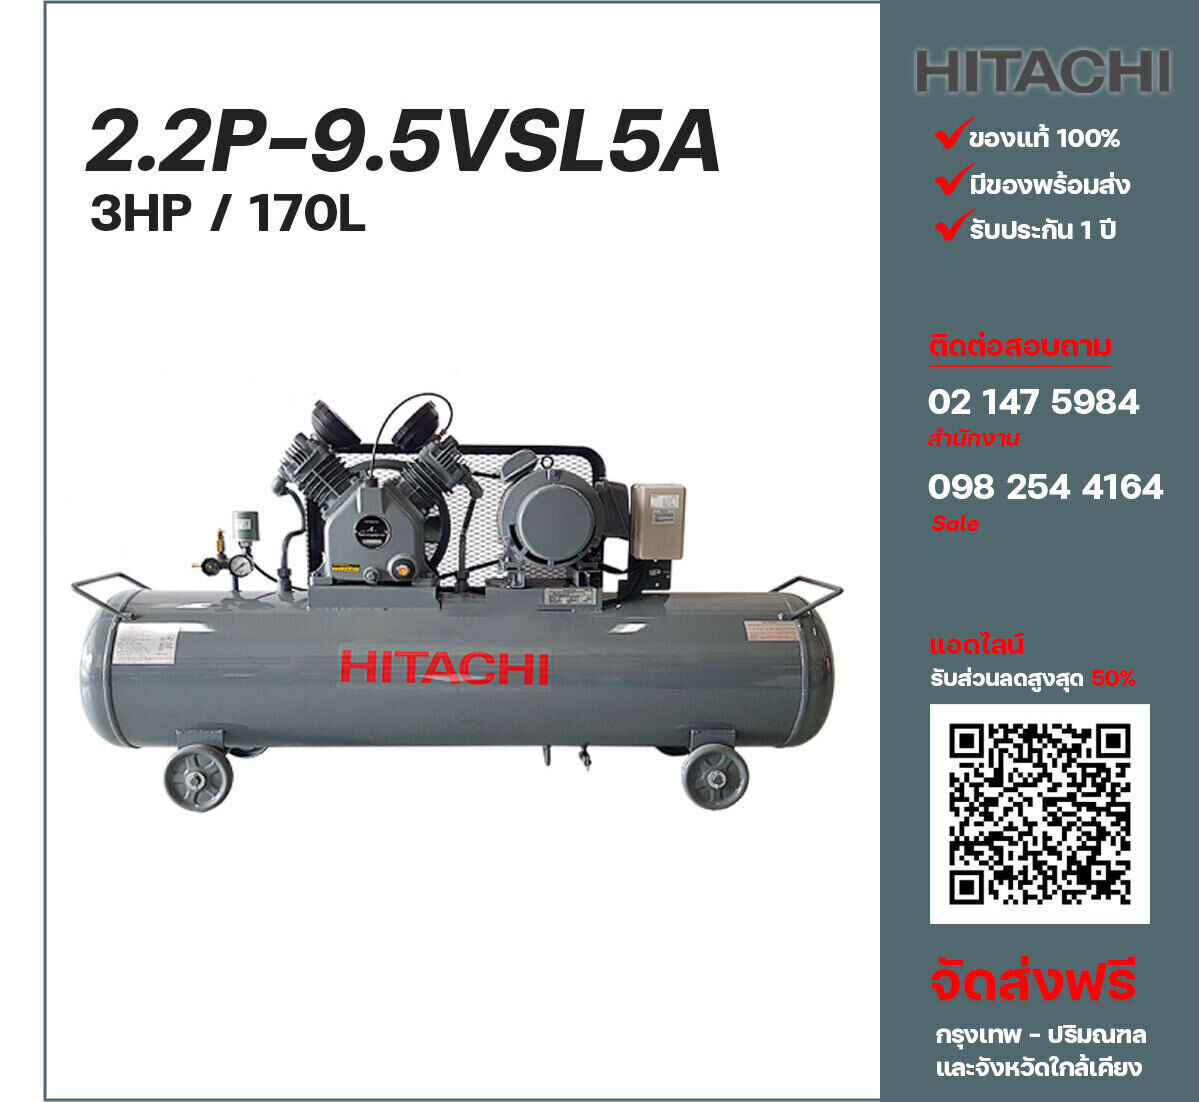 ปั๊มลมฮิตาชิ HITACHI รุ่นใช้น้ำมัน 2.2P-9.5VSL5A220V ปั๊มลมลูกสูบ ขนาด 2 สูบ 3 แรงม้า 170 ลิตร Hitachi พร้อมมอเตอร์ Hitachi ไฟ 220V ส่งฟรี กรุงเทพฯ-ปริมณฑล รับประกัน 1 ปี